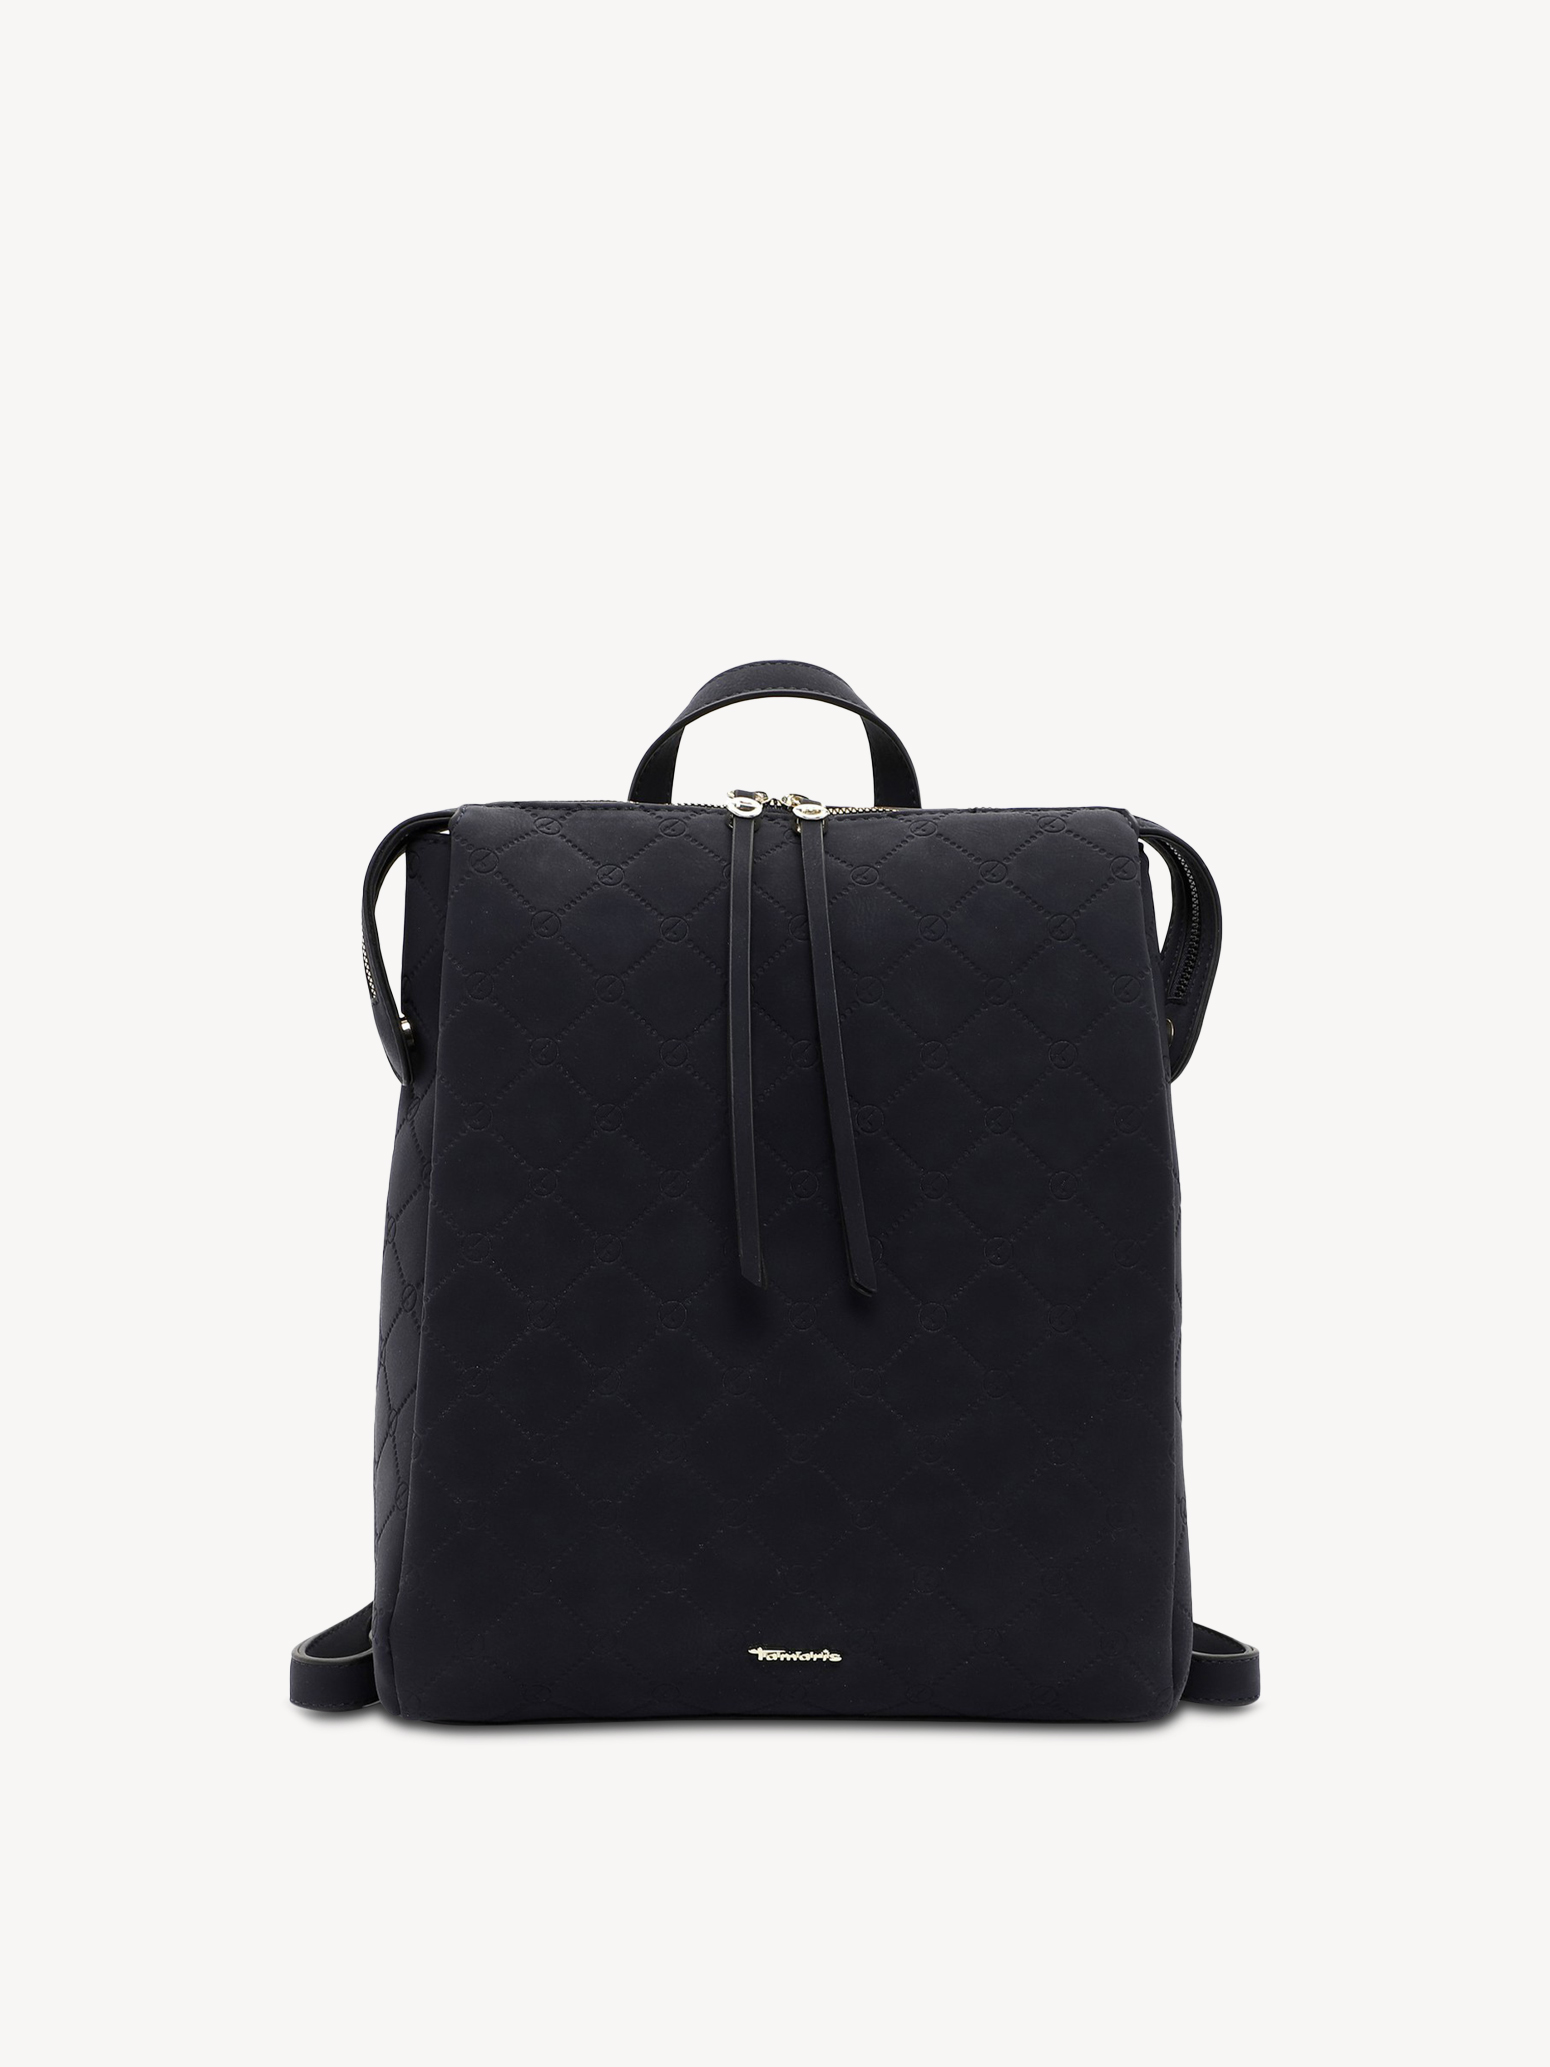 Backpack - blue 31866-500: Buy Tamaris Backpacks online!